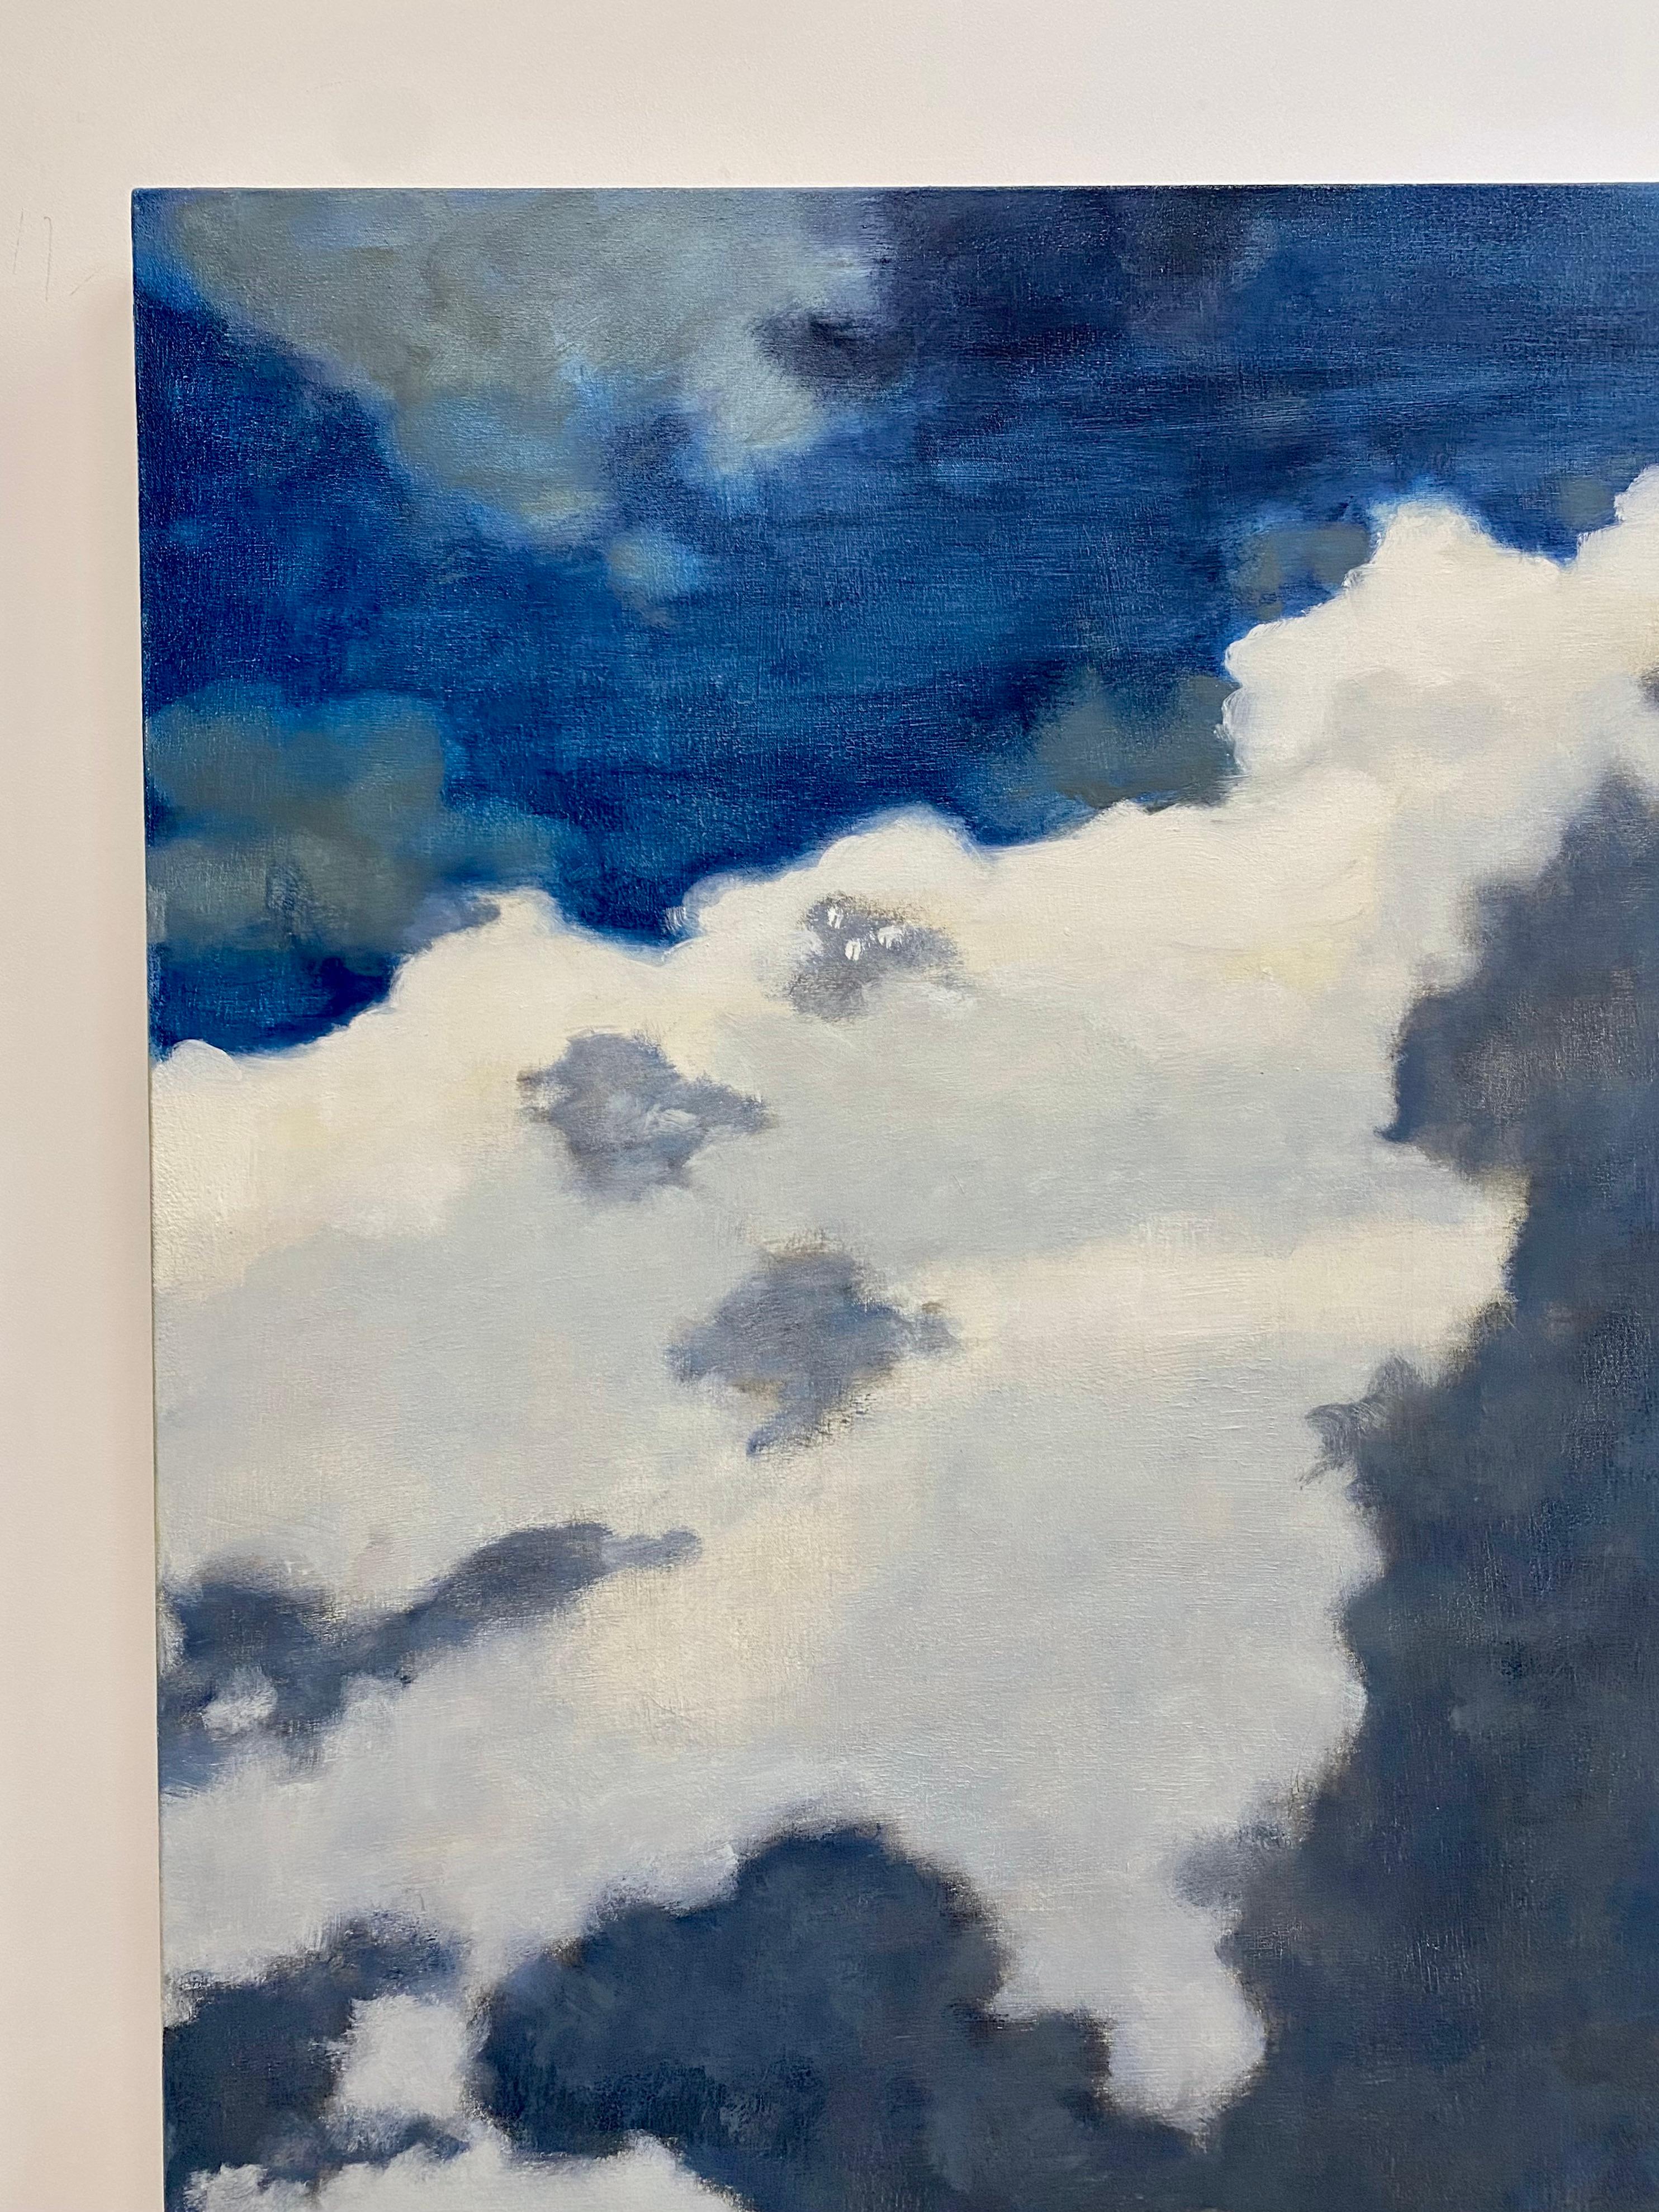 Le drame et la beauté sublime du vaste ciel d'été de la vallée de l'Hudson, dans l'État de New York, sont saisis dans cette peinture dramatique de David Konigsberg. L'artiste est largement reconnu pour ses nuages et cette peinture est l'une de ses